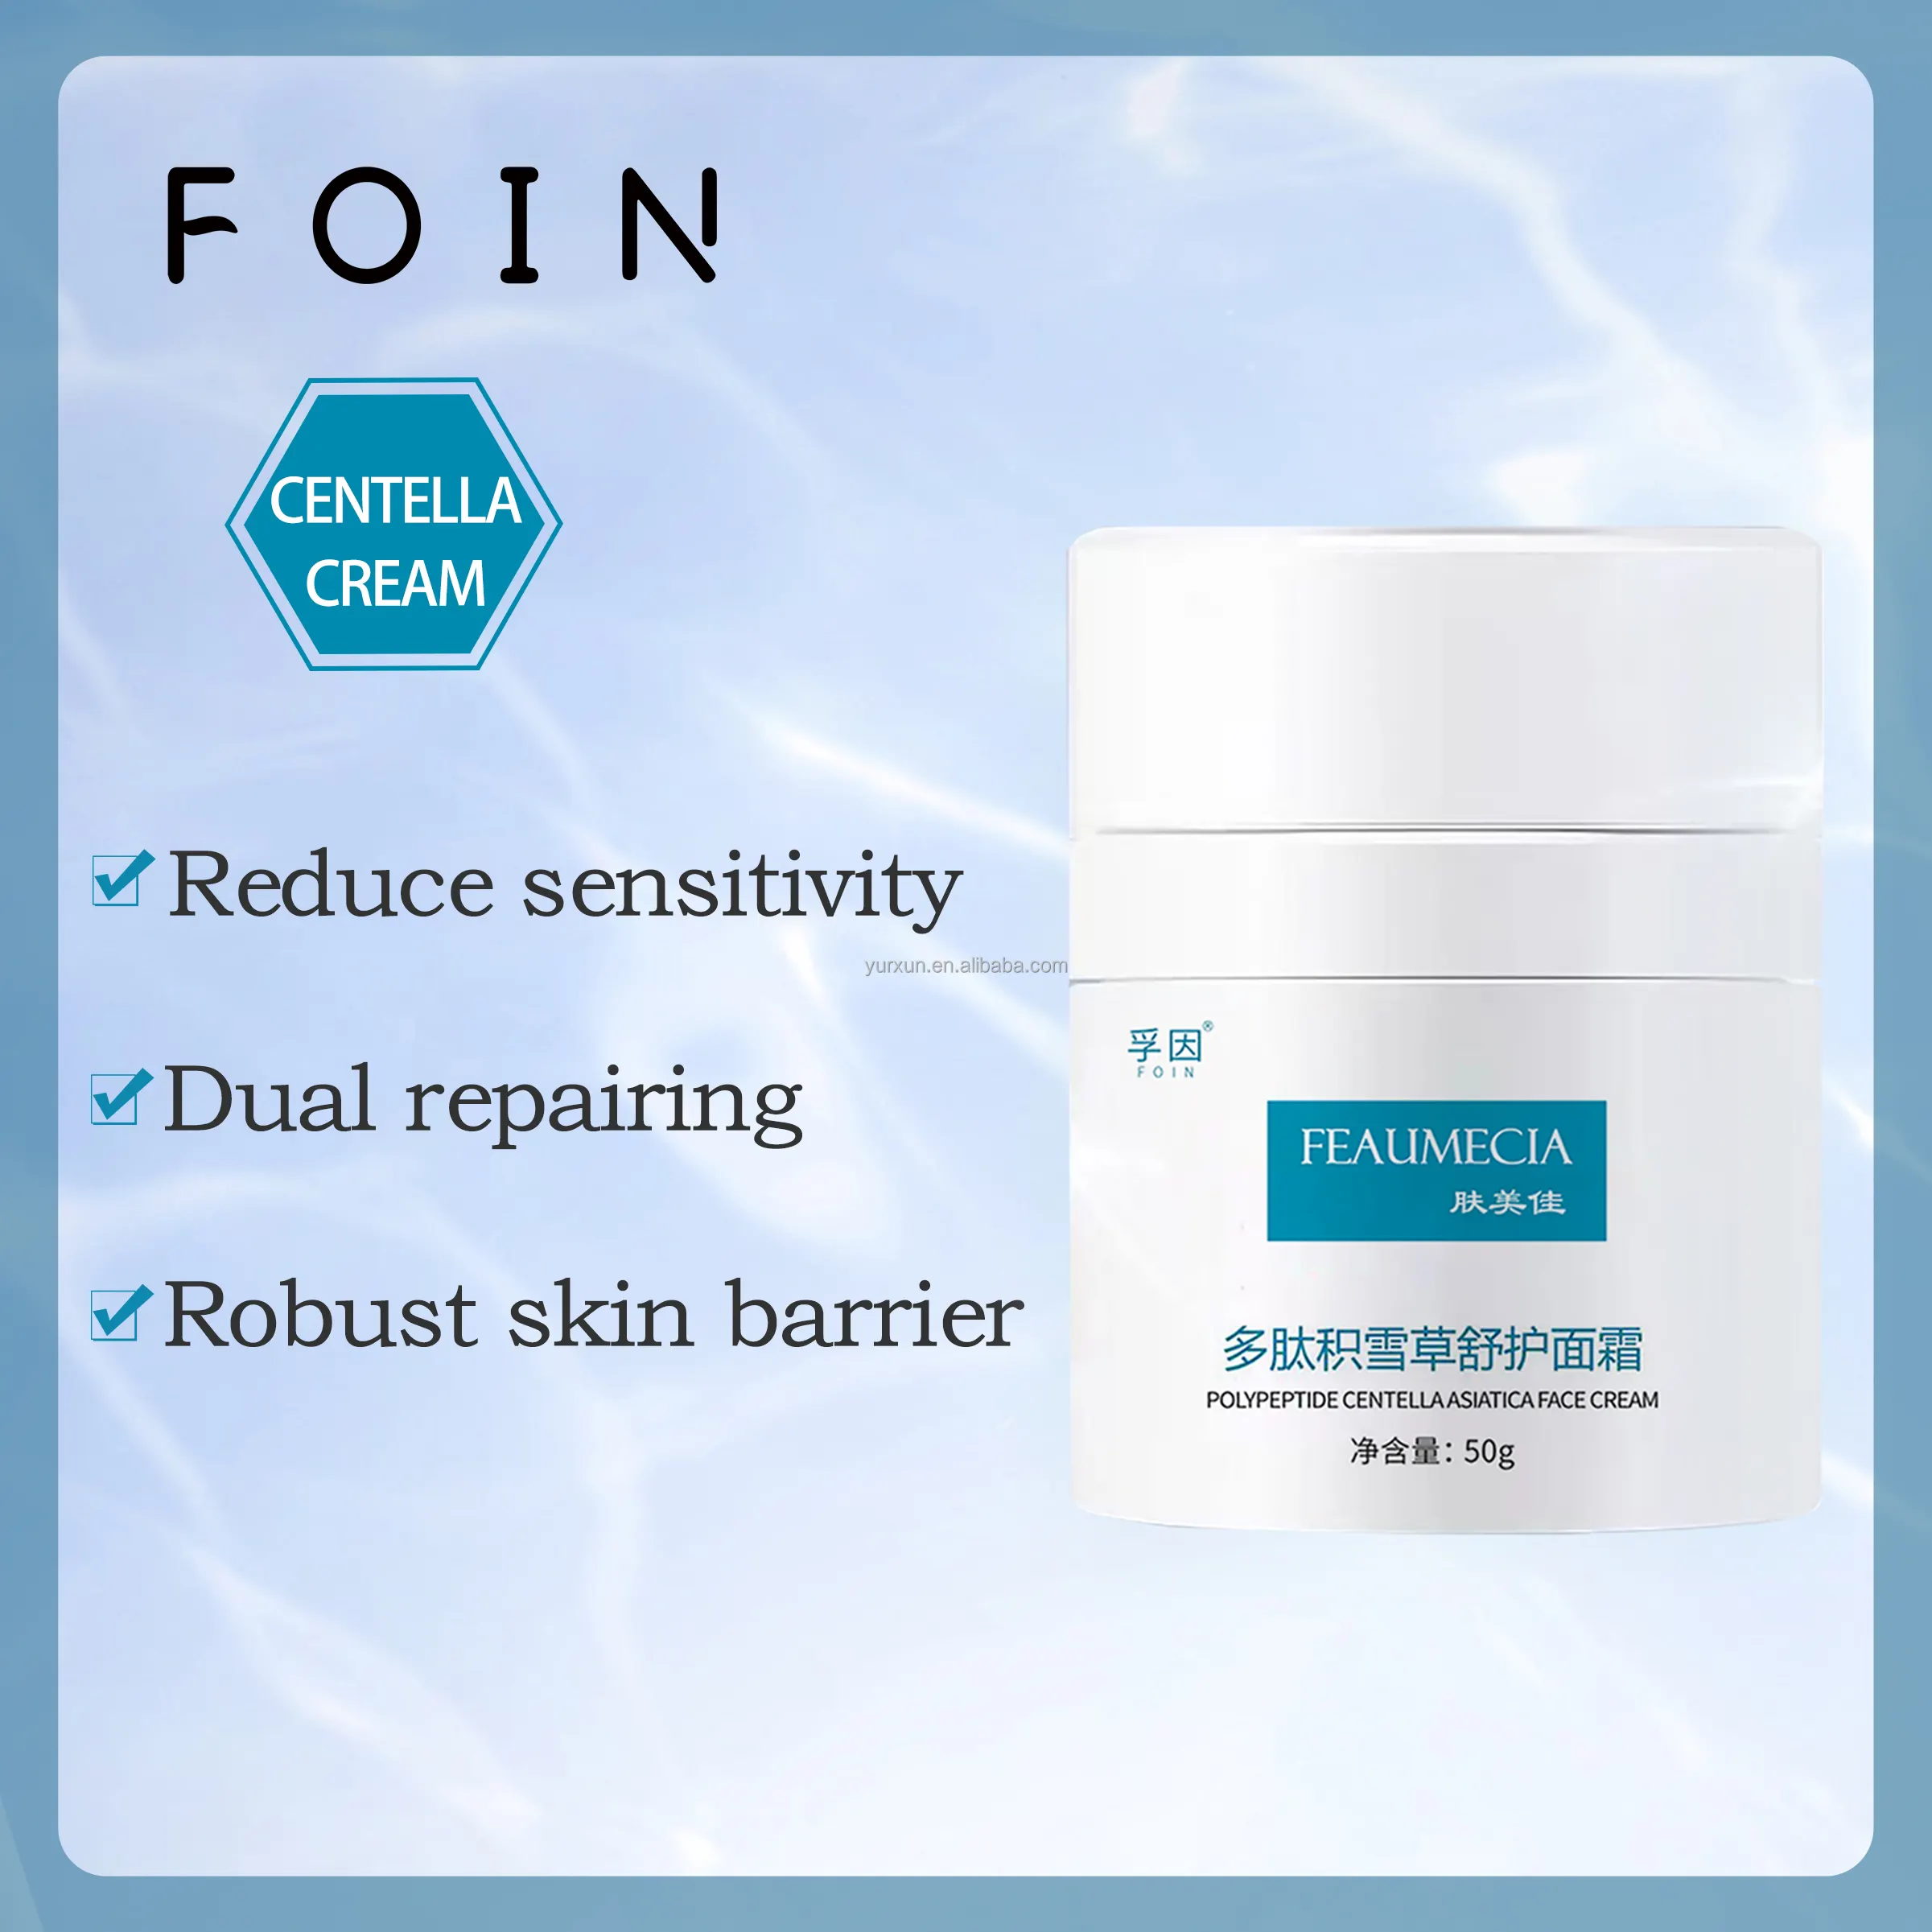 Crema reparadora de la piel FOIN centella, crema hidratante para pieles secas y sensibles, crema para pieles sensibles